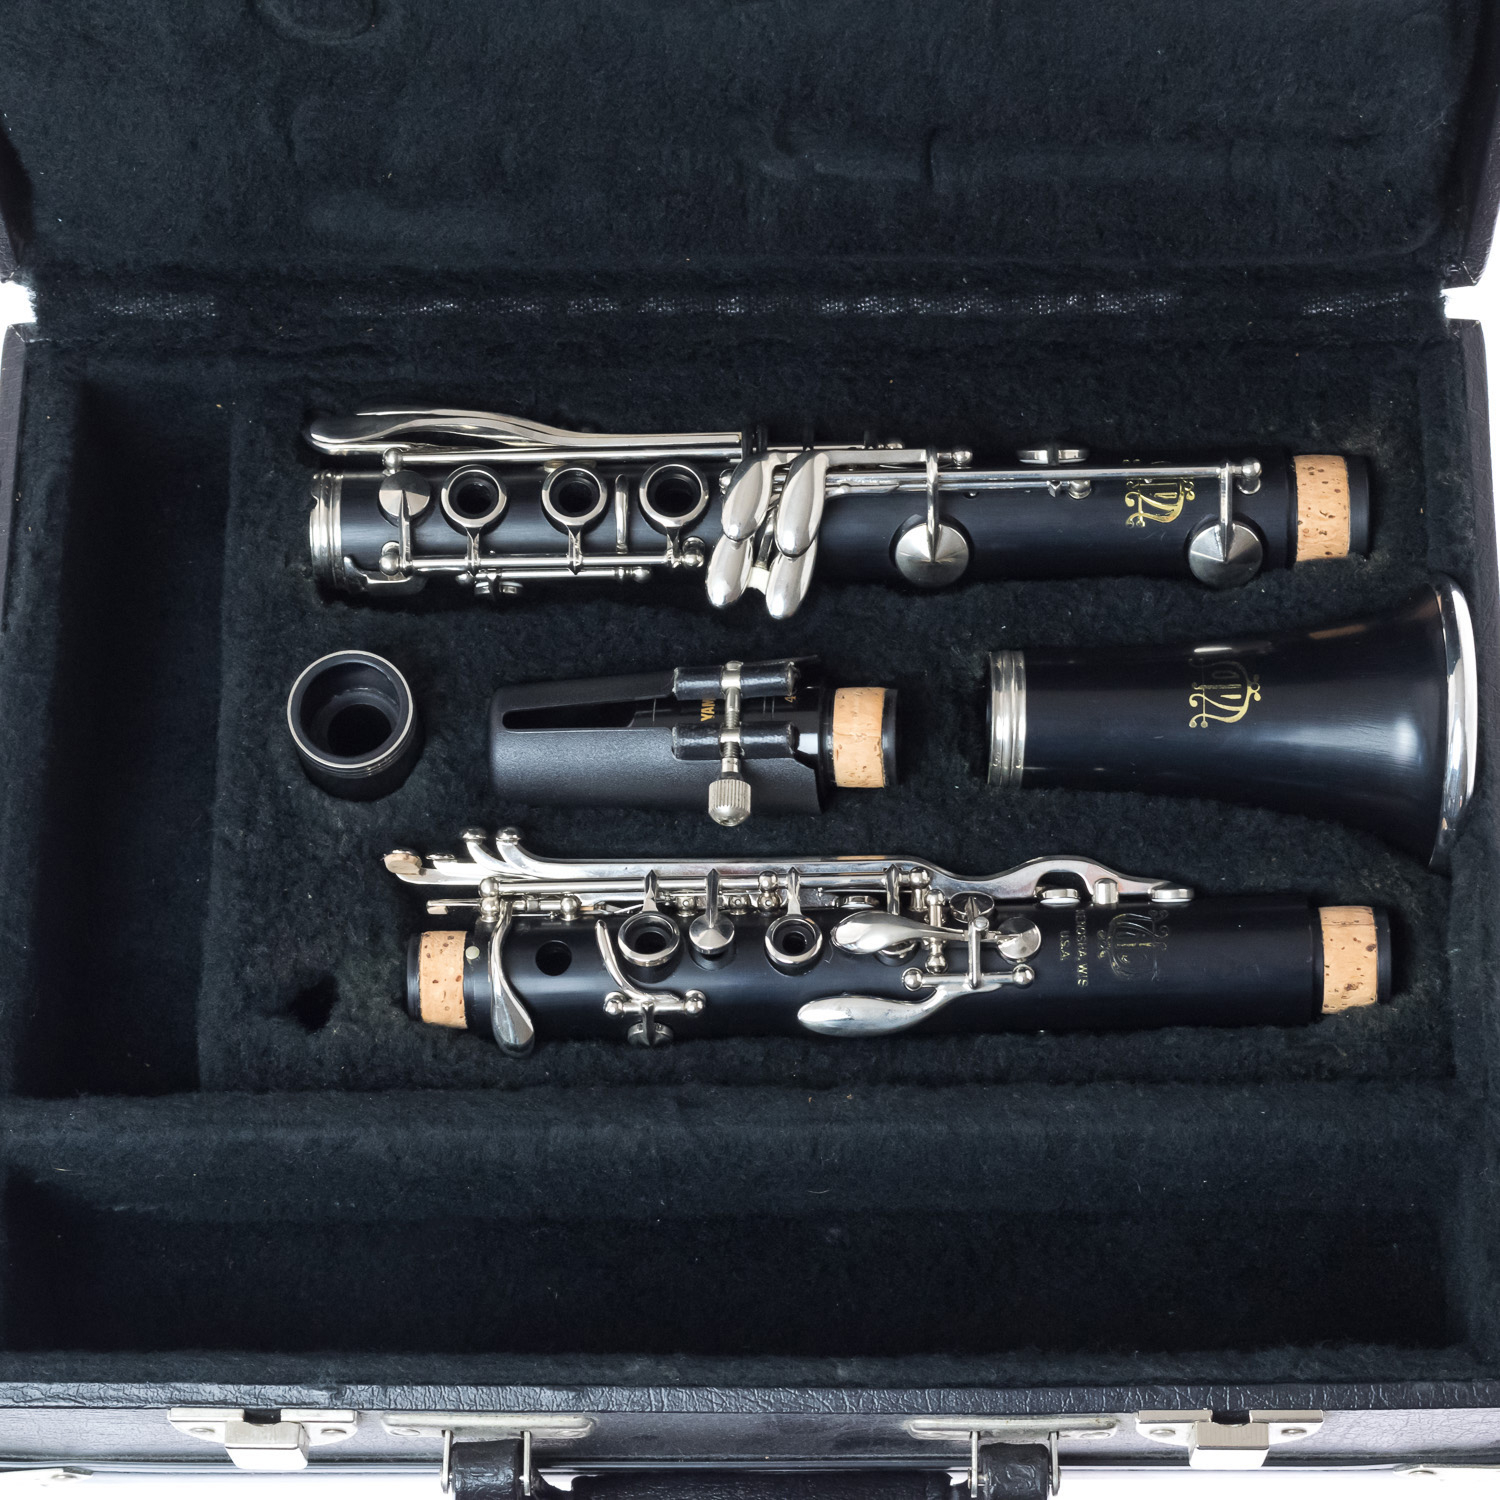 Pre-Owned Vito-Leblanc Clarinet - Nr 014437